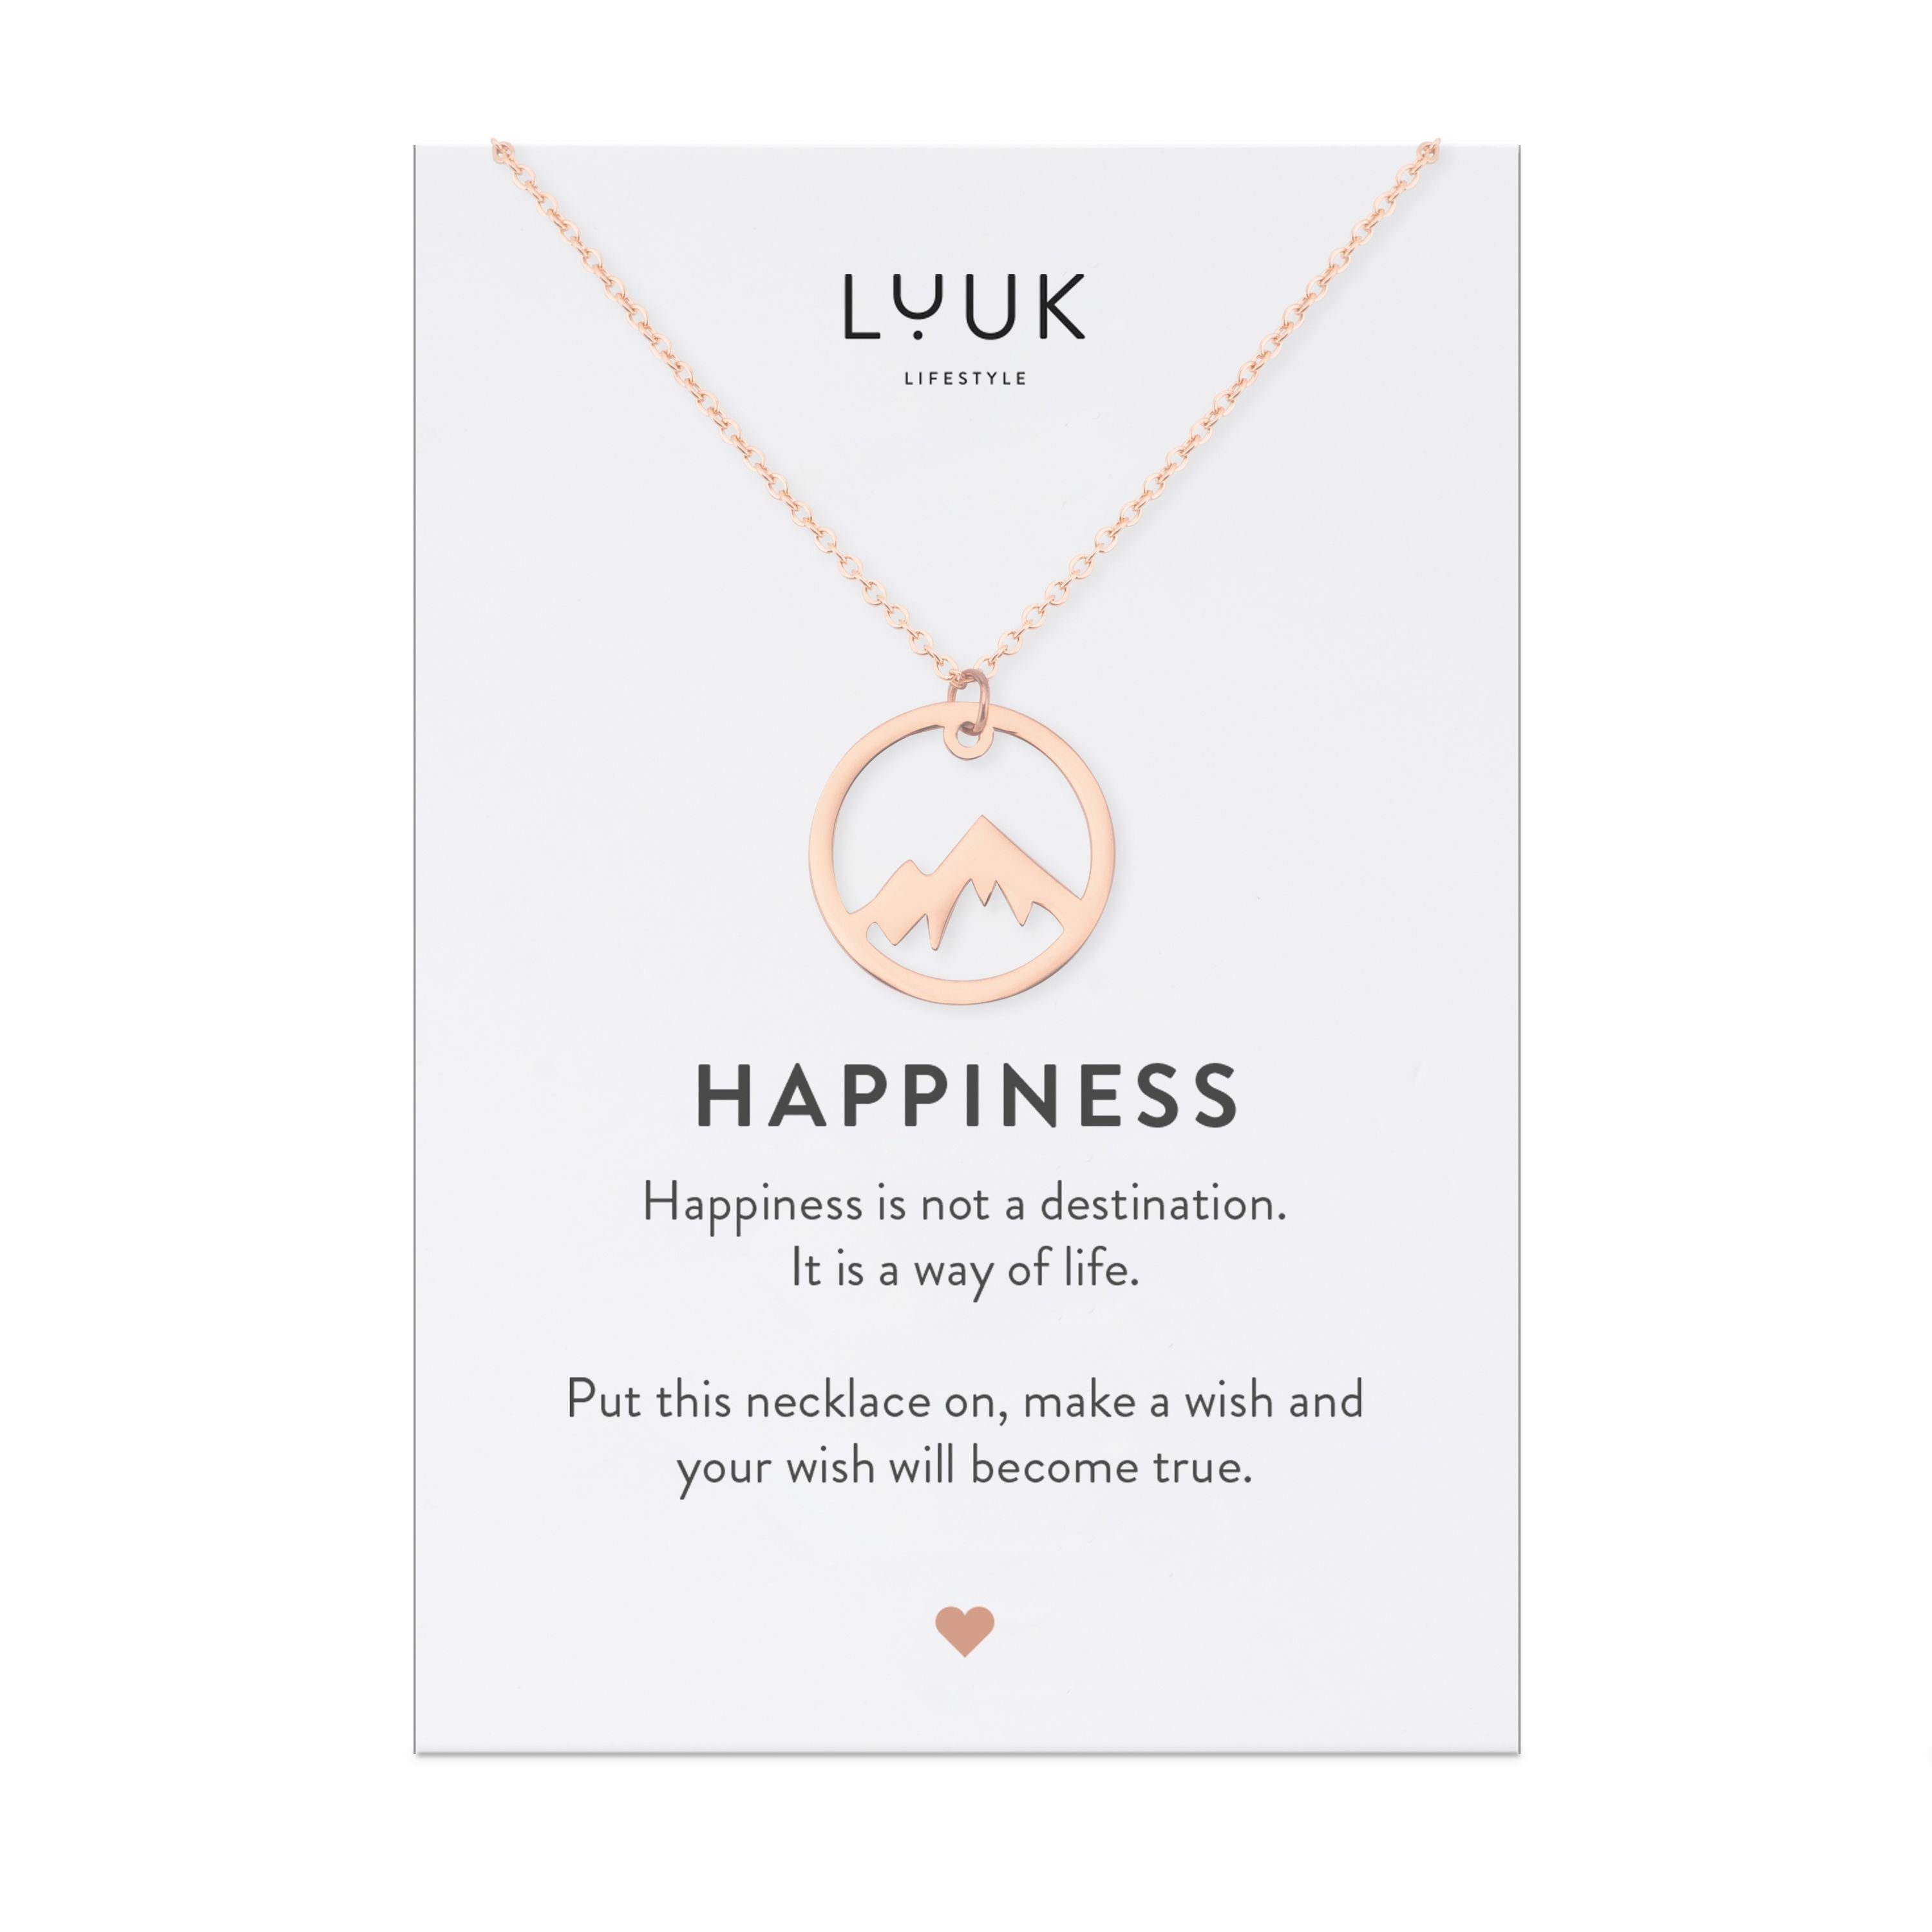 LIFESTYLE hochwertiger Geschenkkarte, HAPPINESS mit Berggipfel, Rosé Anhänger Edelstahl LUUK Kette